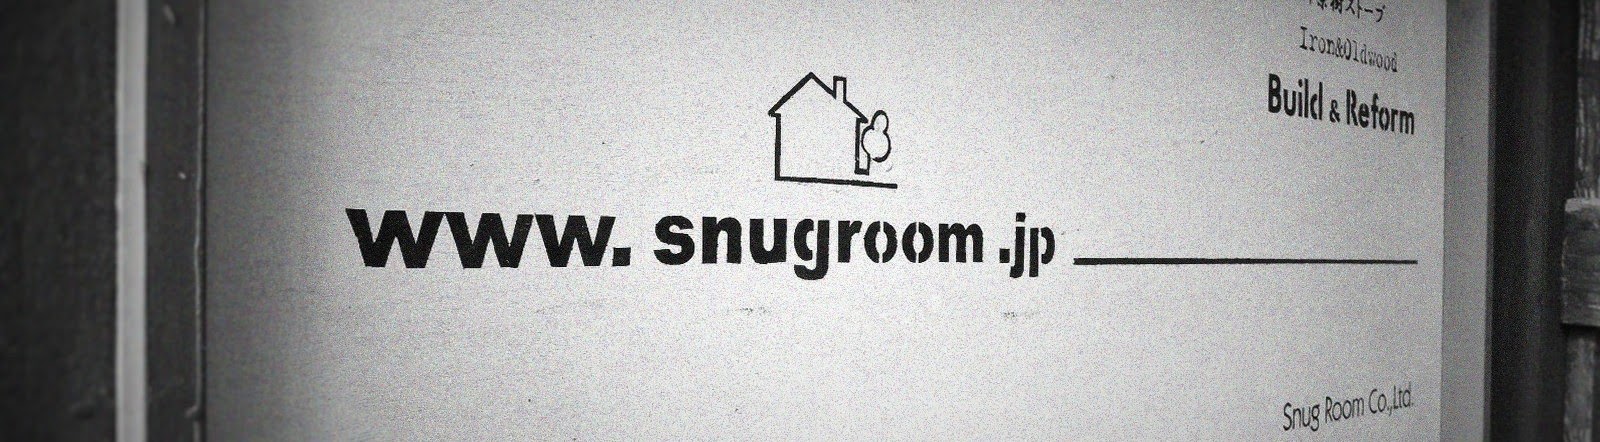 Snug Room のホームページ